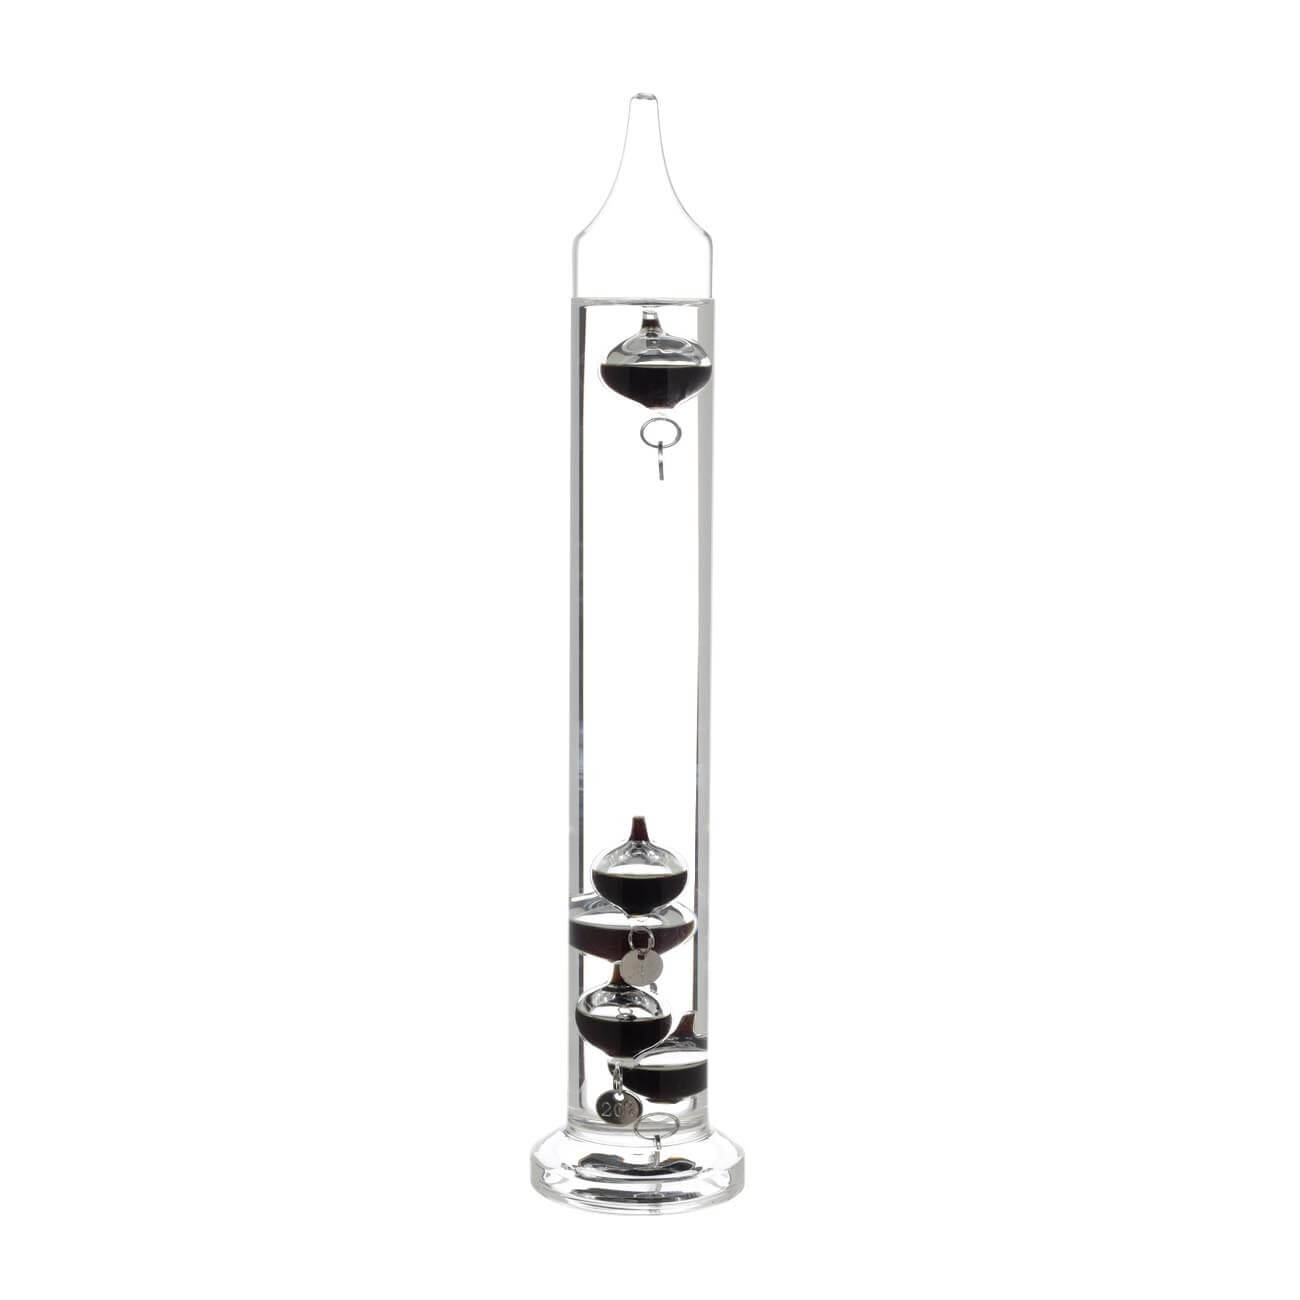 Термометр Галилея, 28 см, 5 сосудов-буйков, стекло, Discovery термометр для бани и сауны сосна стекло банные штучки банный веник 17 5х4 см 18050